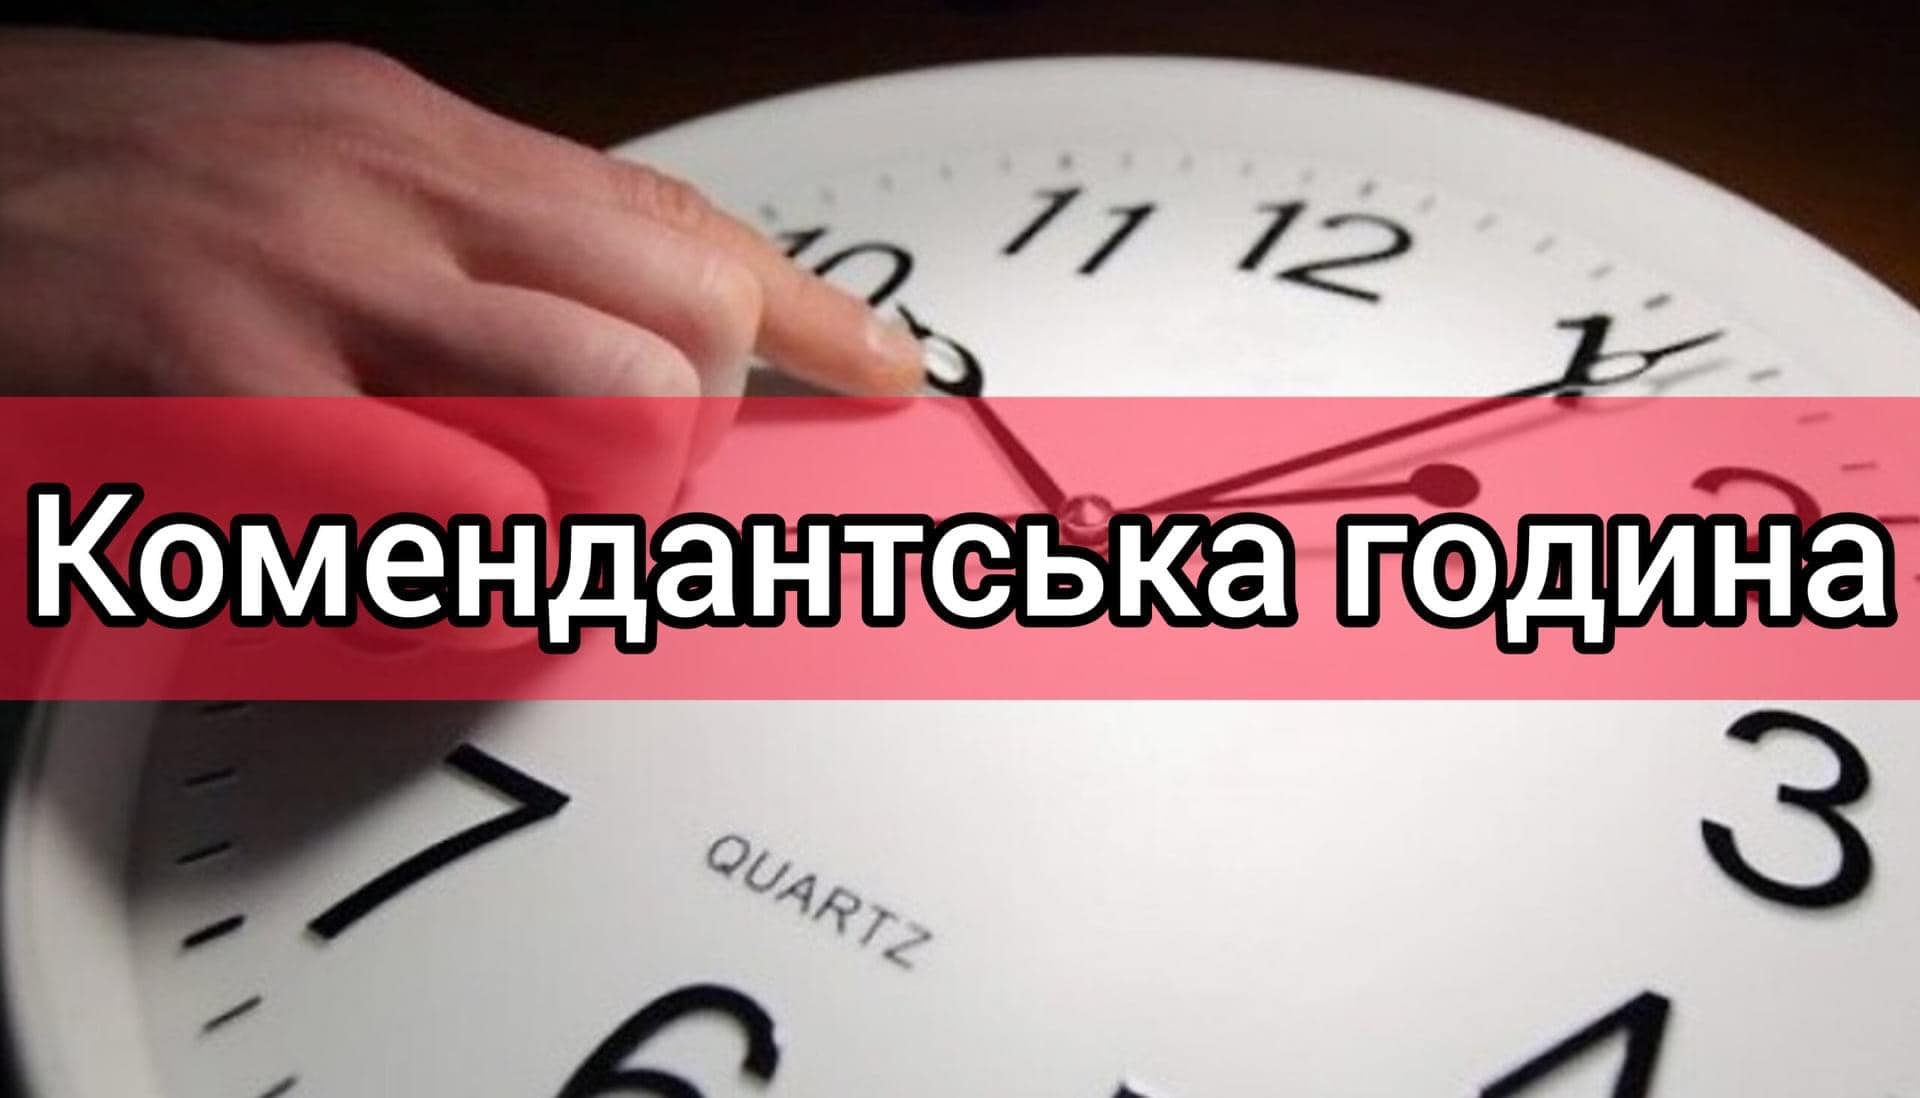 З 1 грудня комендантська година на Миколаївщині, окрім декількох громад, буде з 00:00 до 05:00 (ДОКУМЕНТ) 5